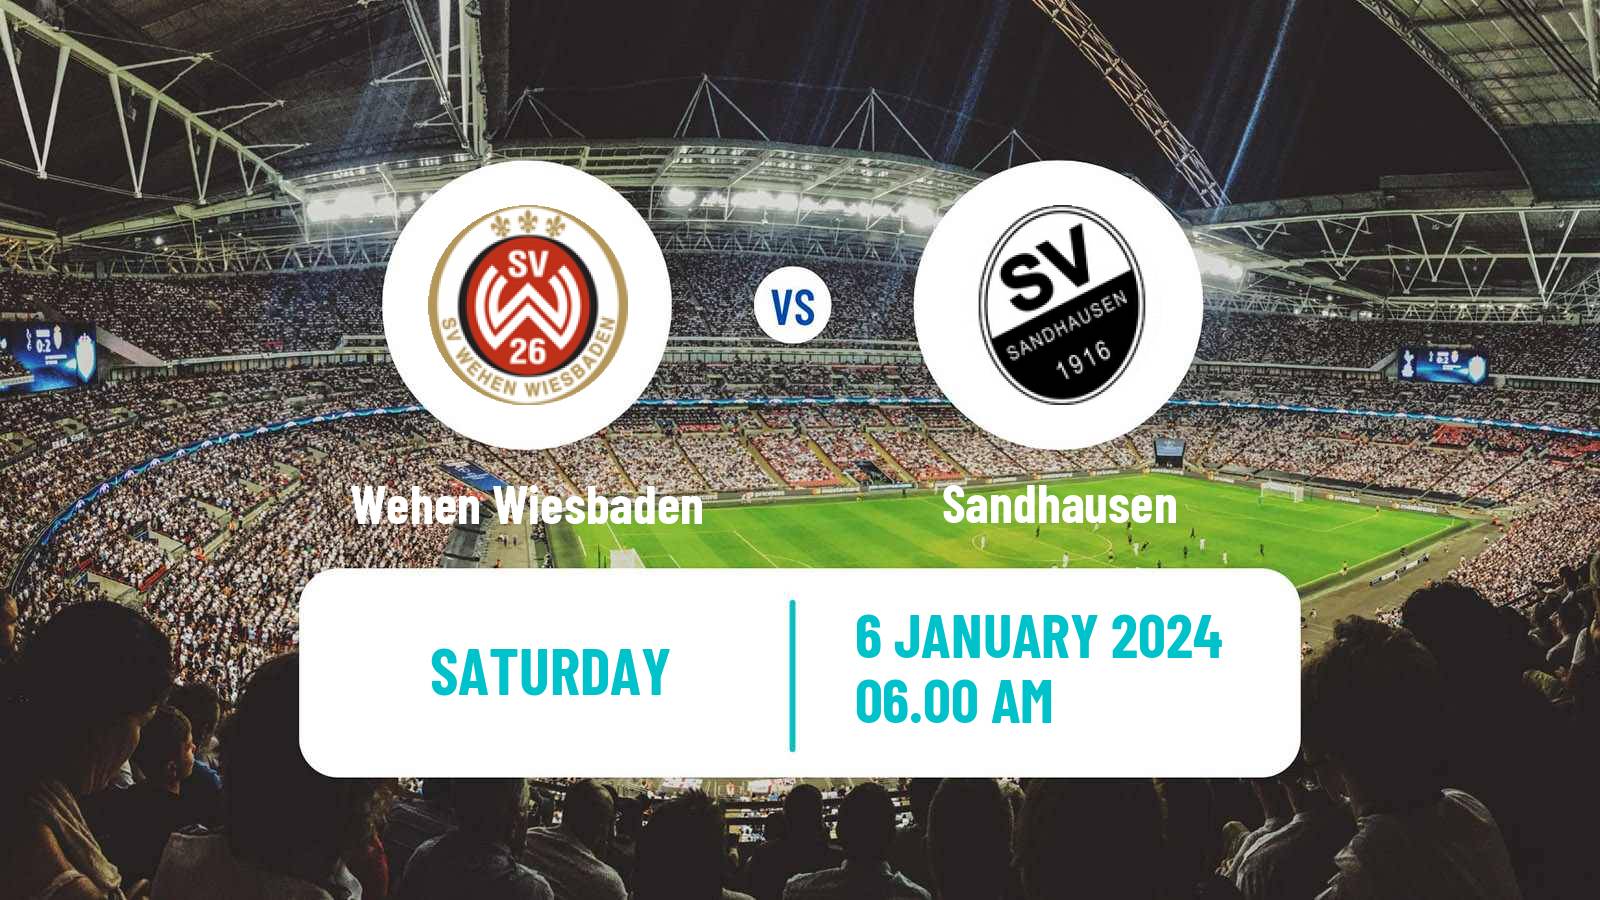 Soccer Club Friendly Wehen Wiesbaden - Sandhausen